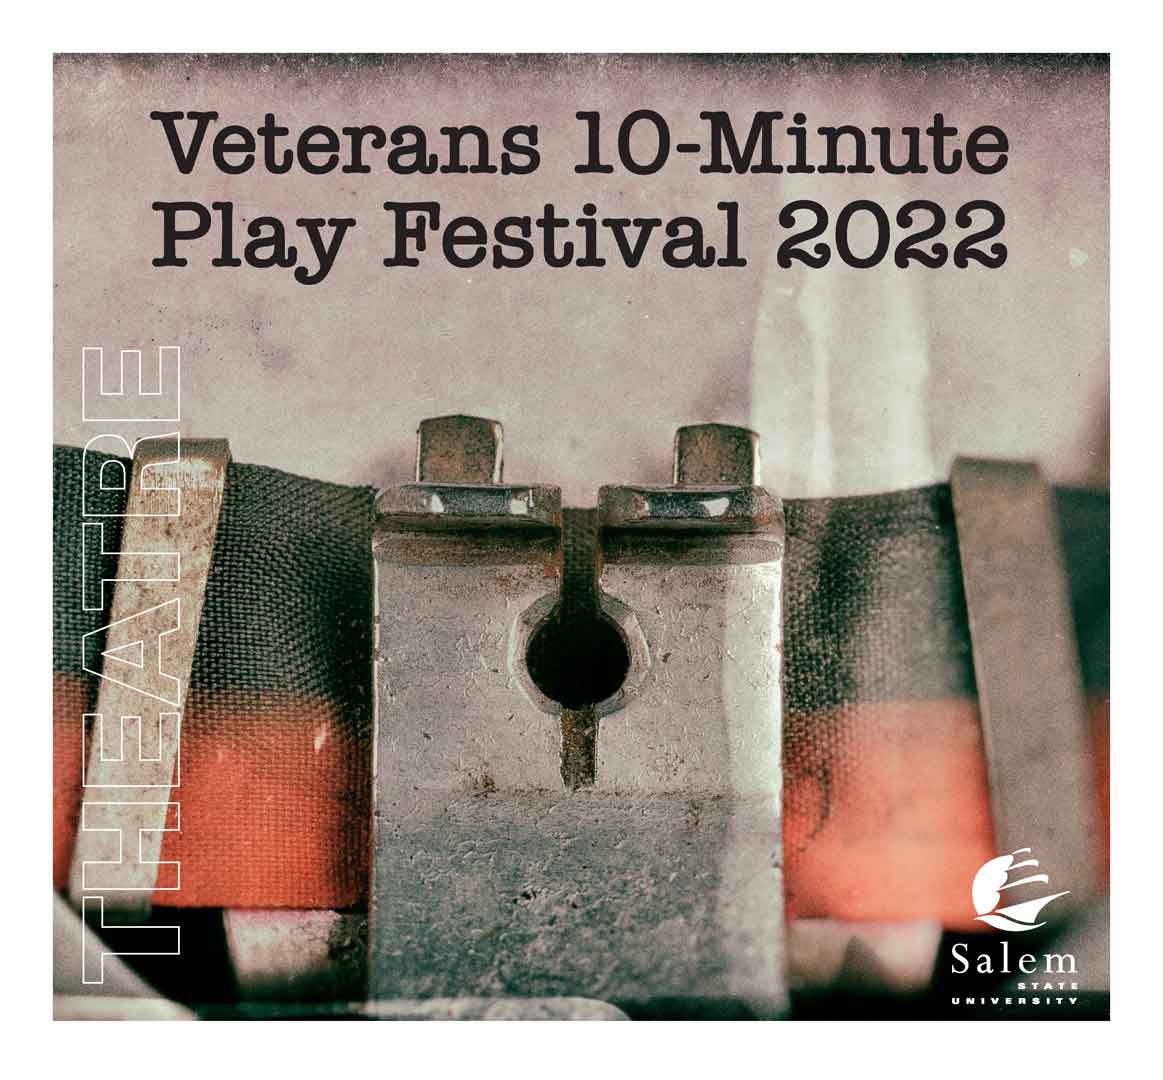 Veterans play festival image